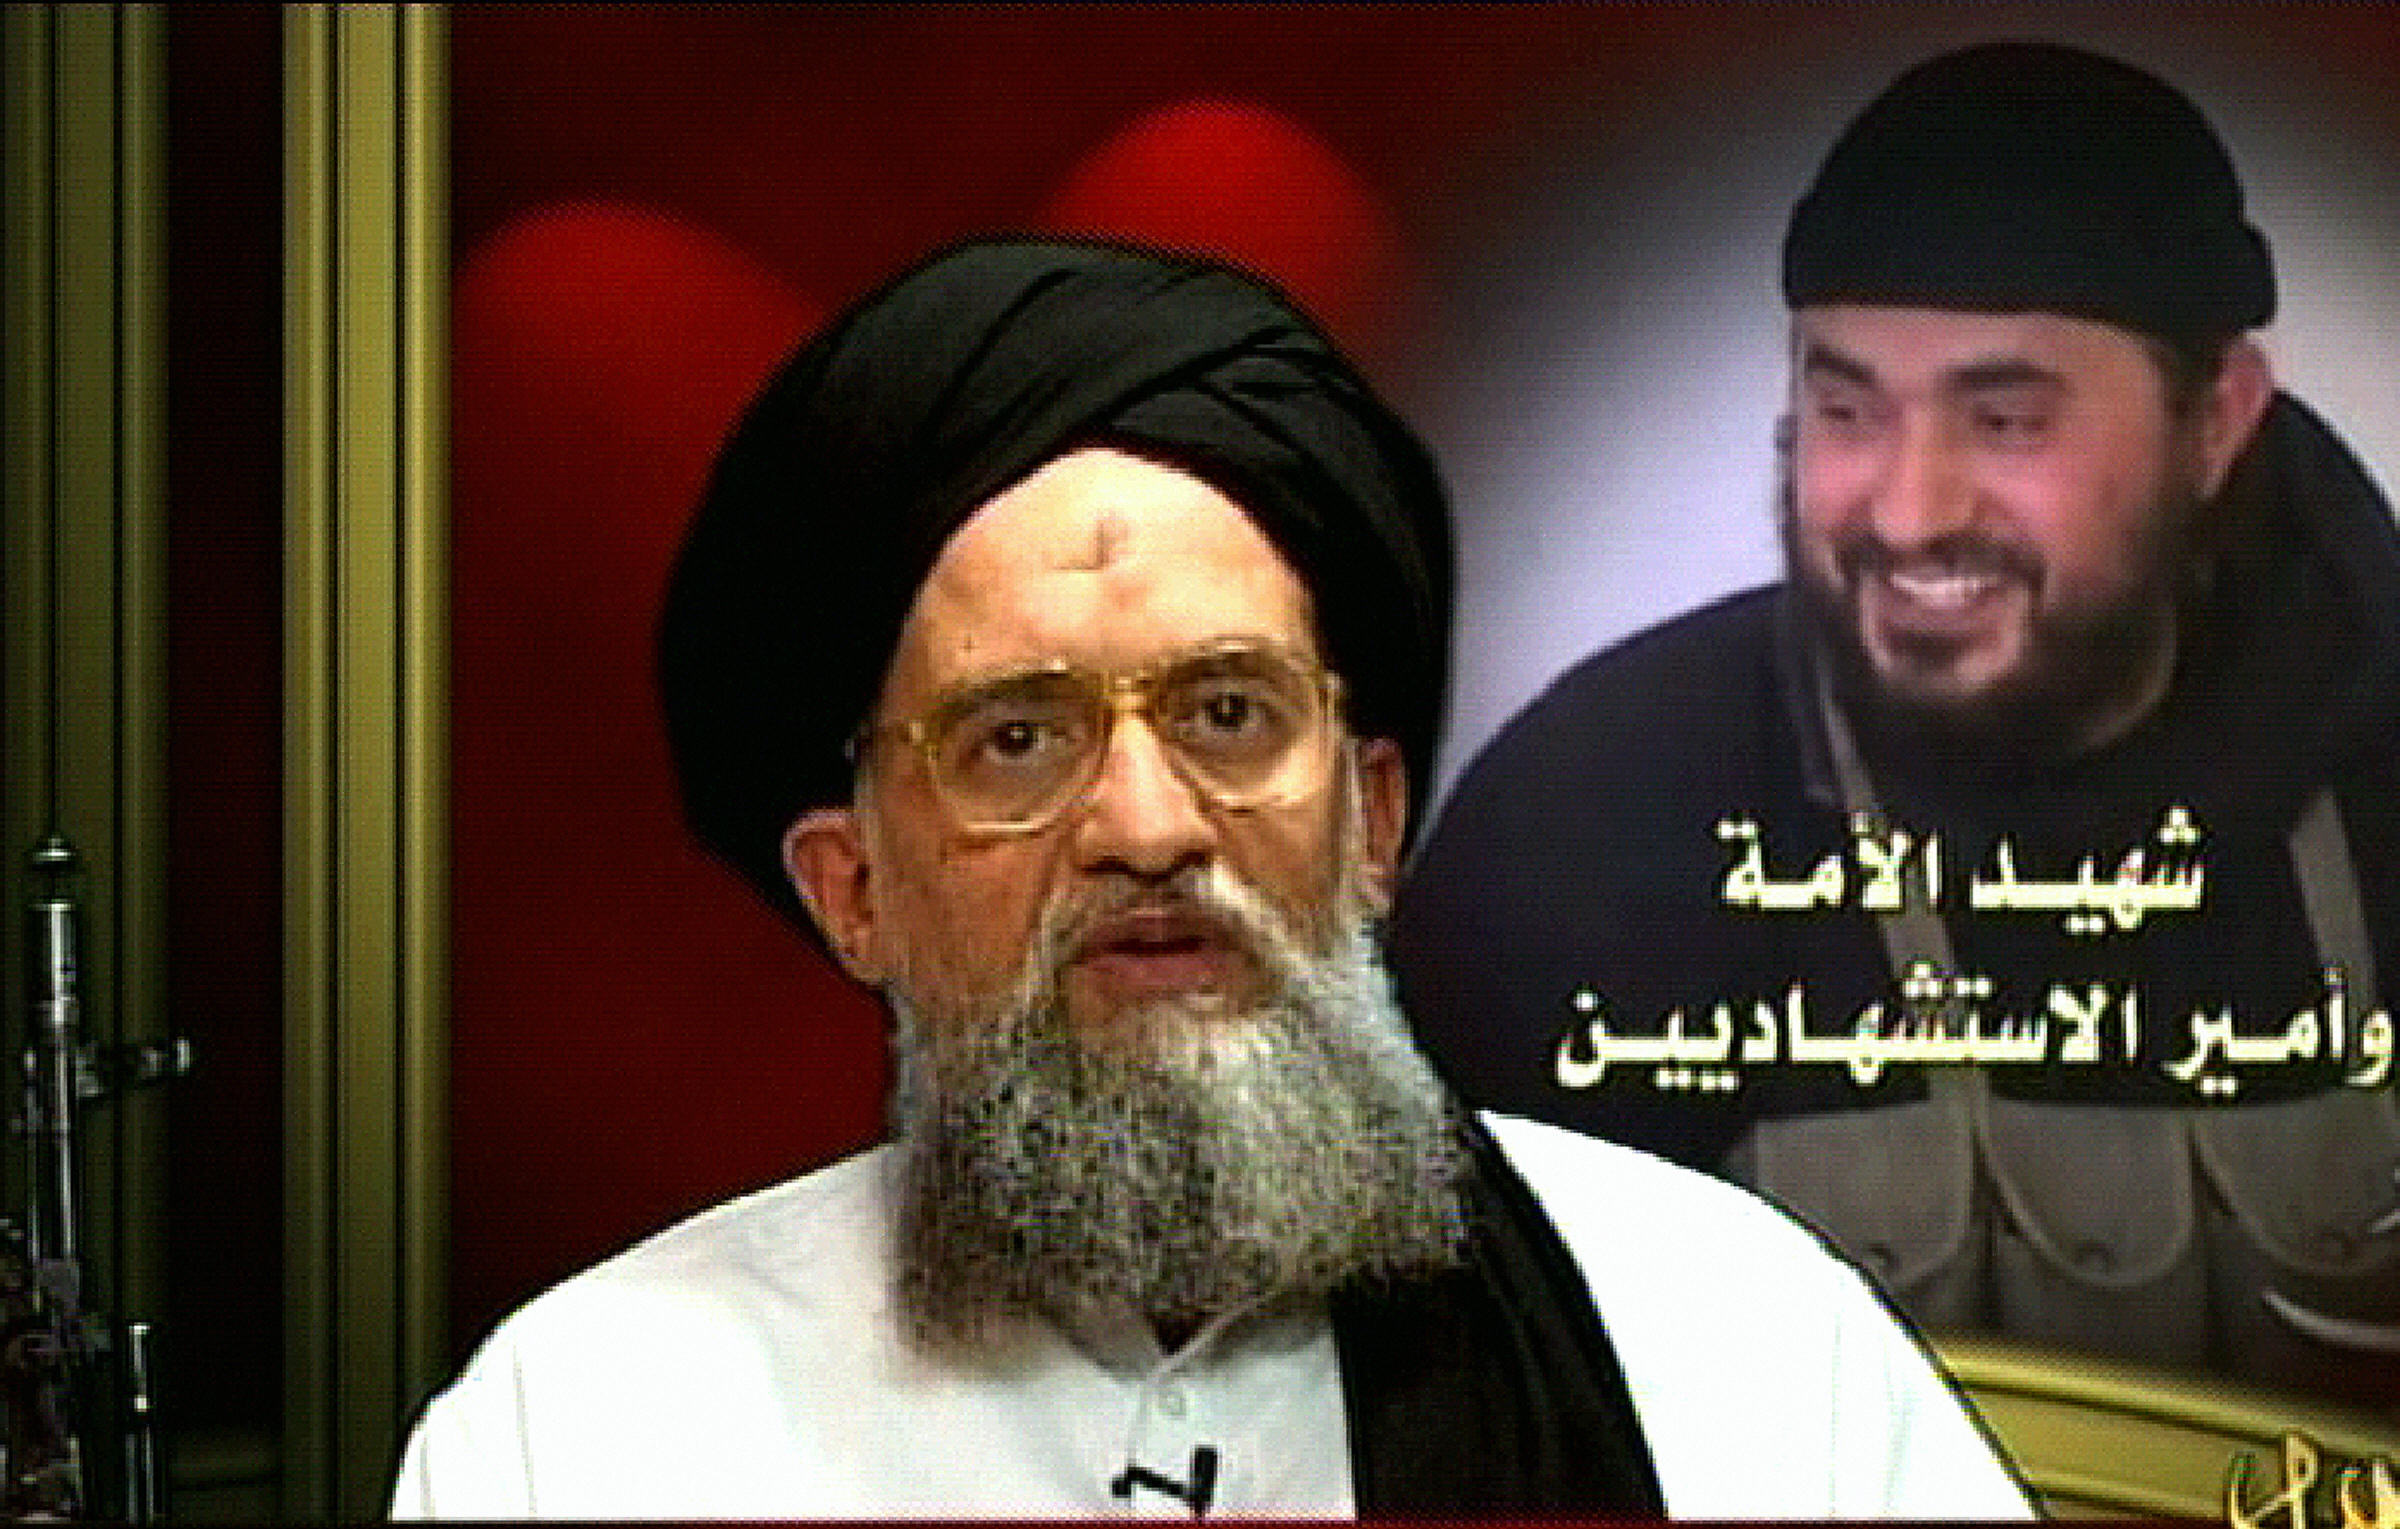 Terrorists Ayman al-Zawahiri